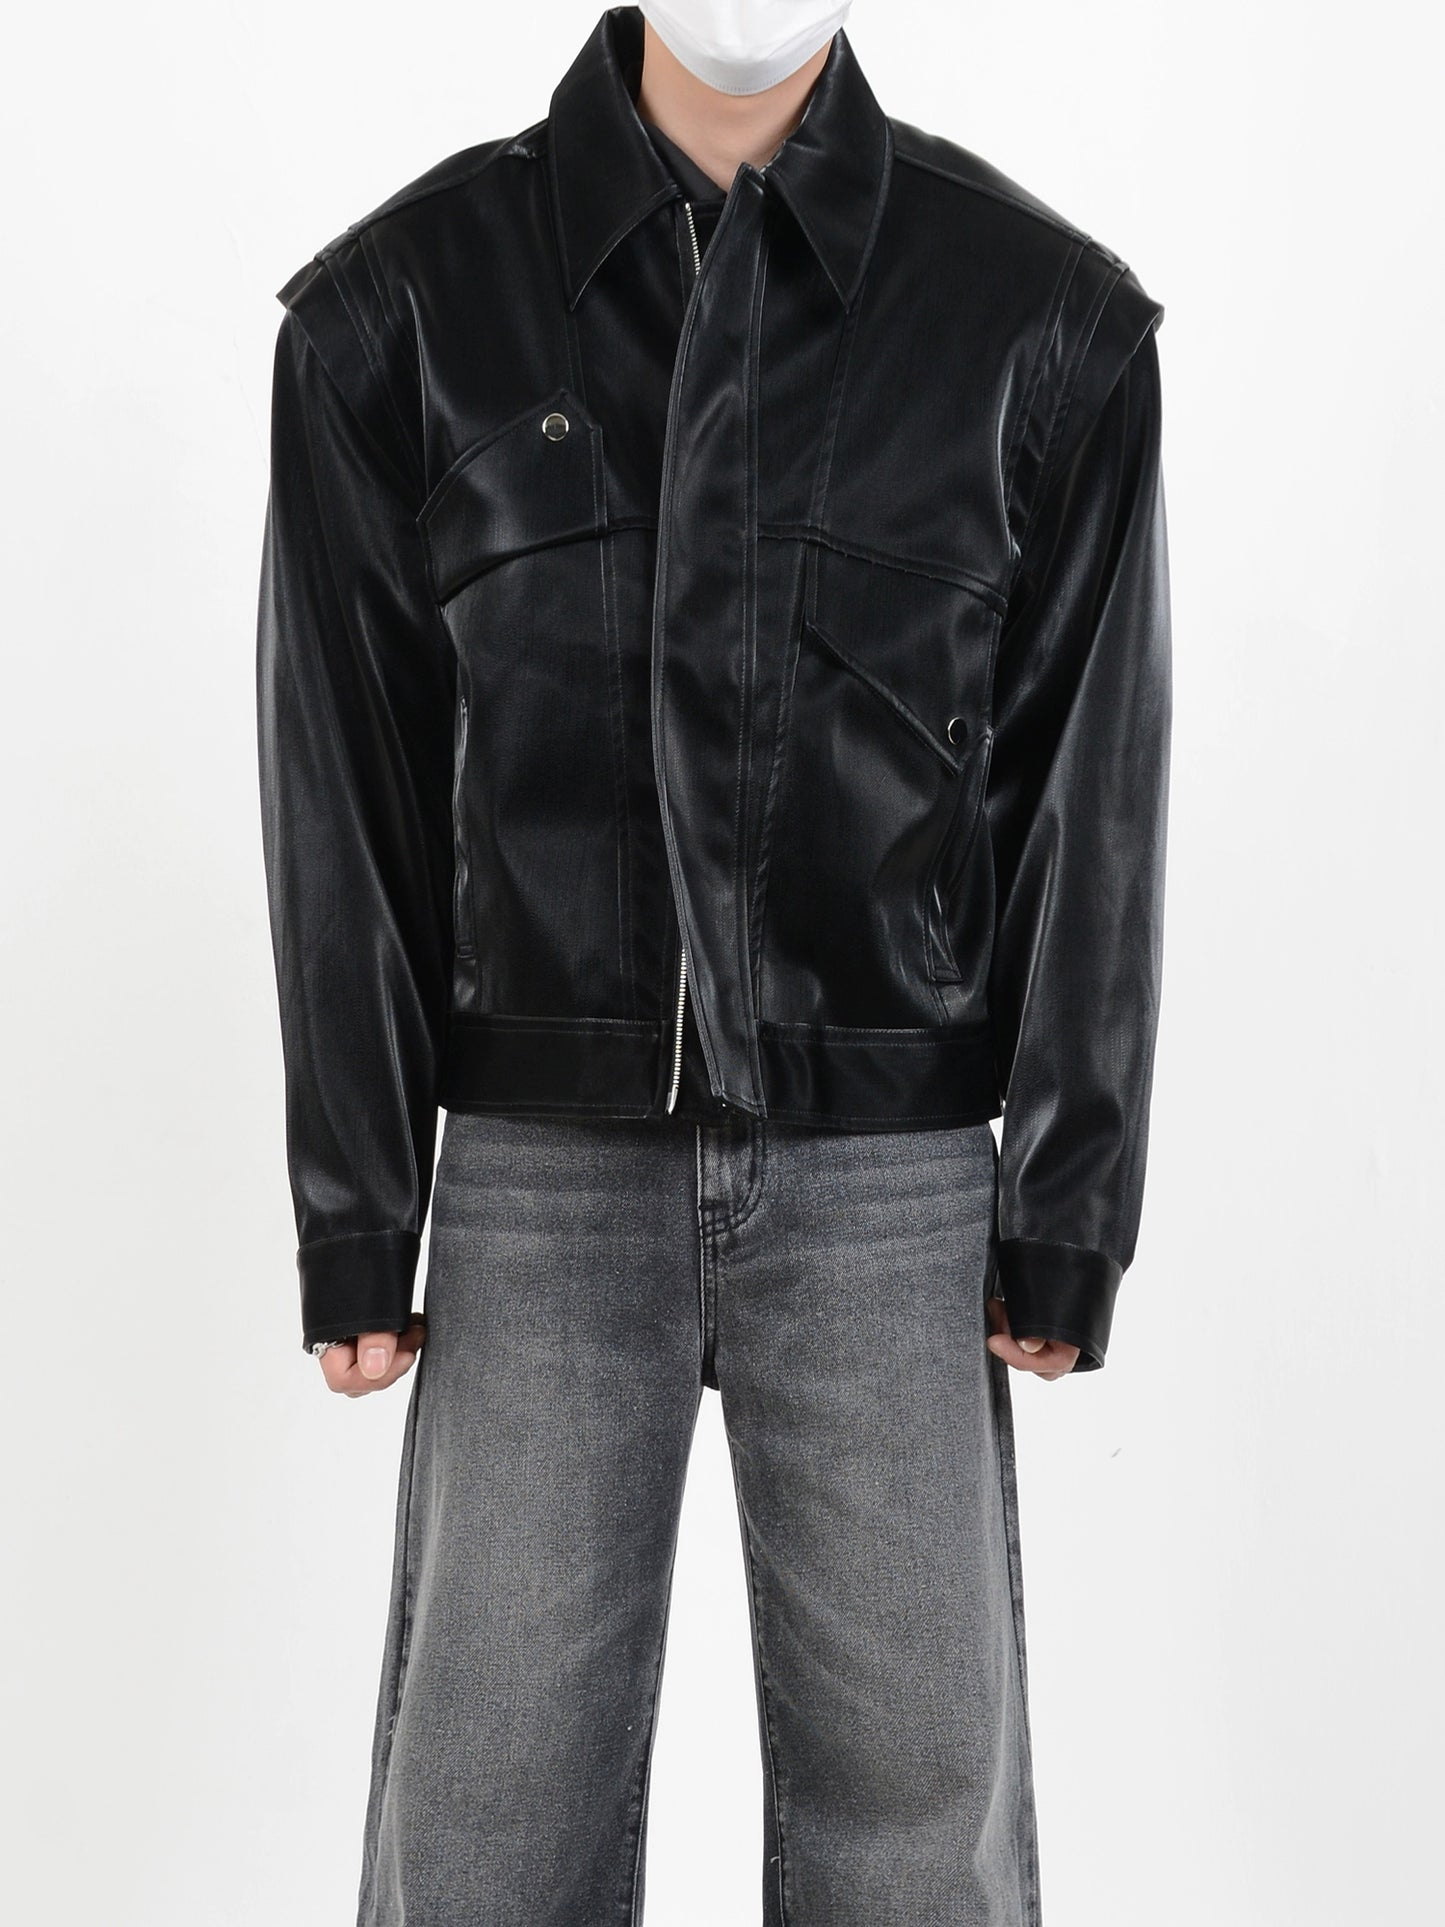 Metal Design Shoulder Pad PU Leather Jacket WN5114